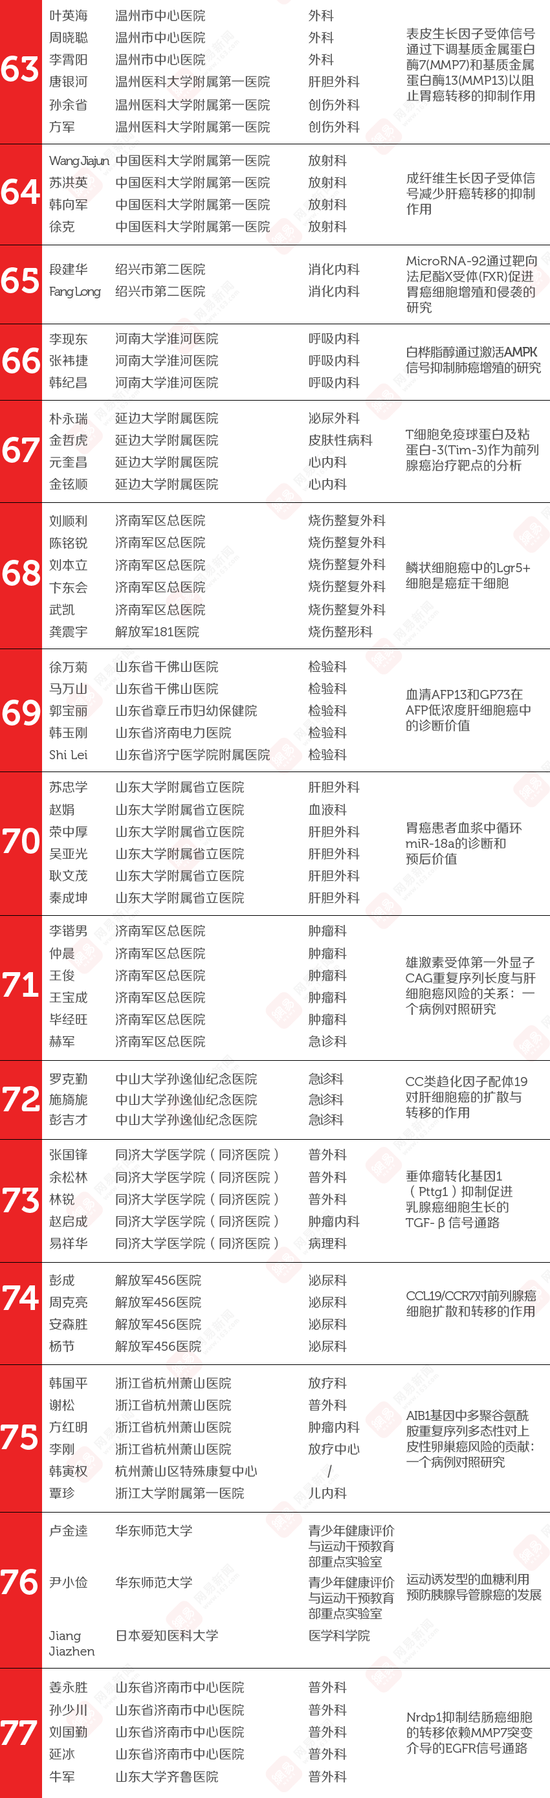 网易新闻 | 524名中国医生论文造假 我们找到了几乎所有医生名字